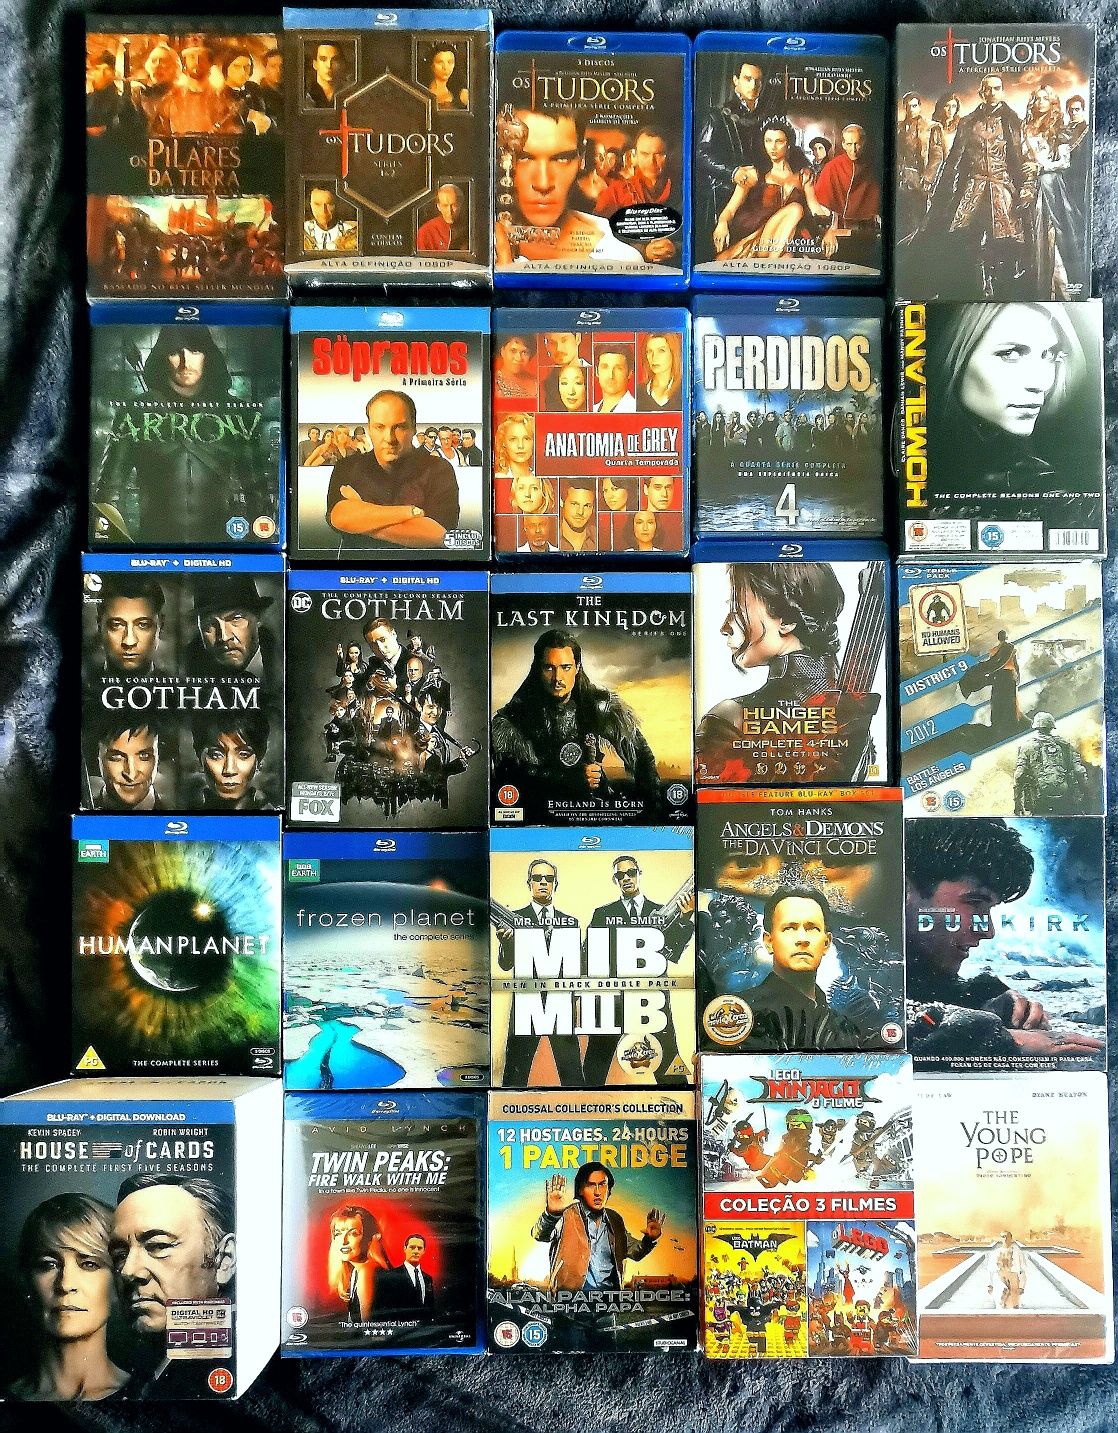 Blu-ray - De colecção (v. 8 fotos).